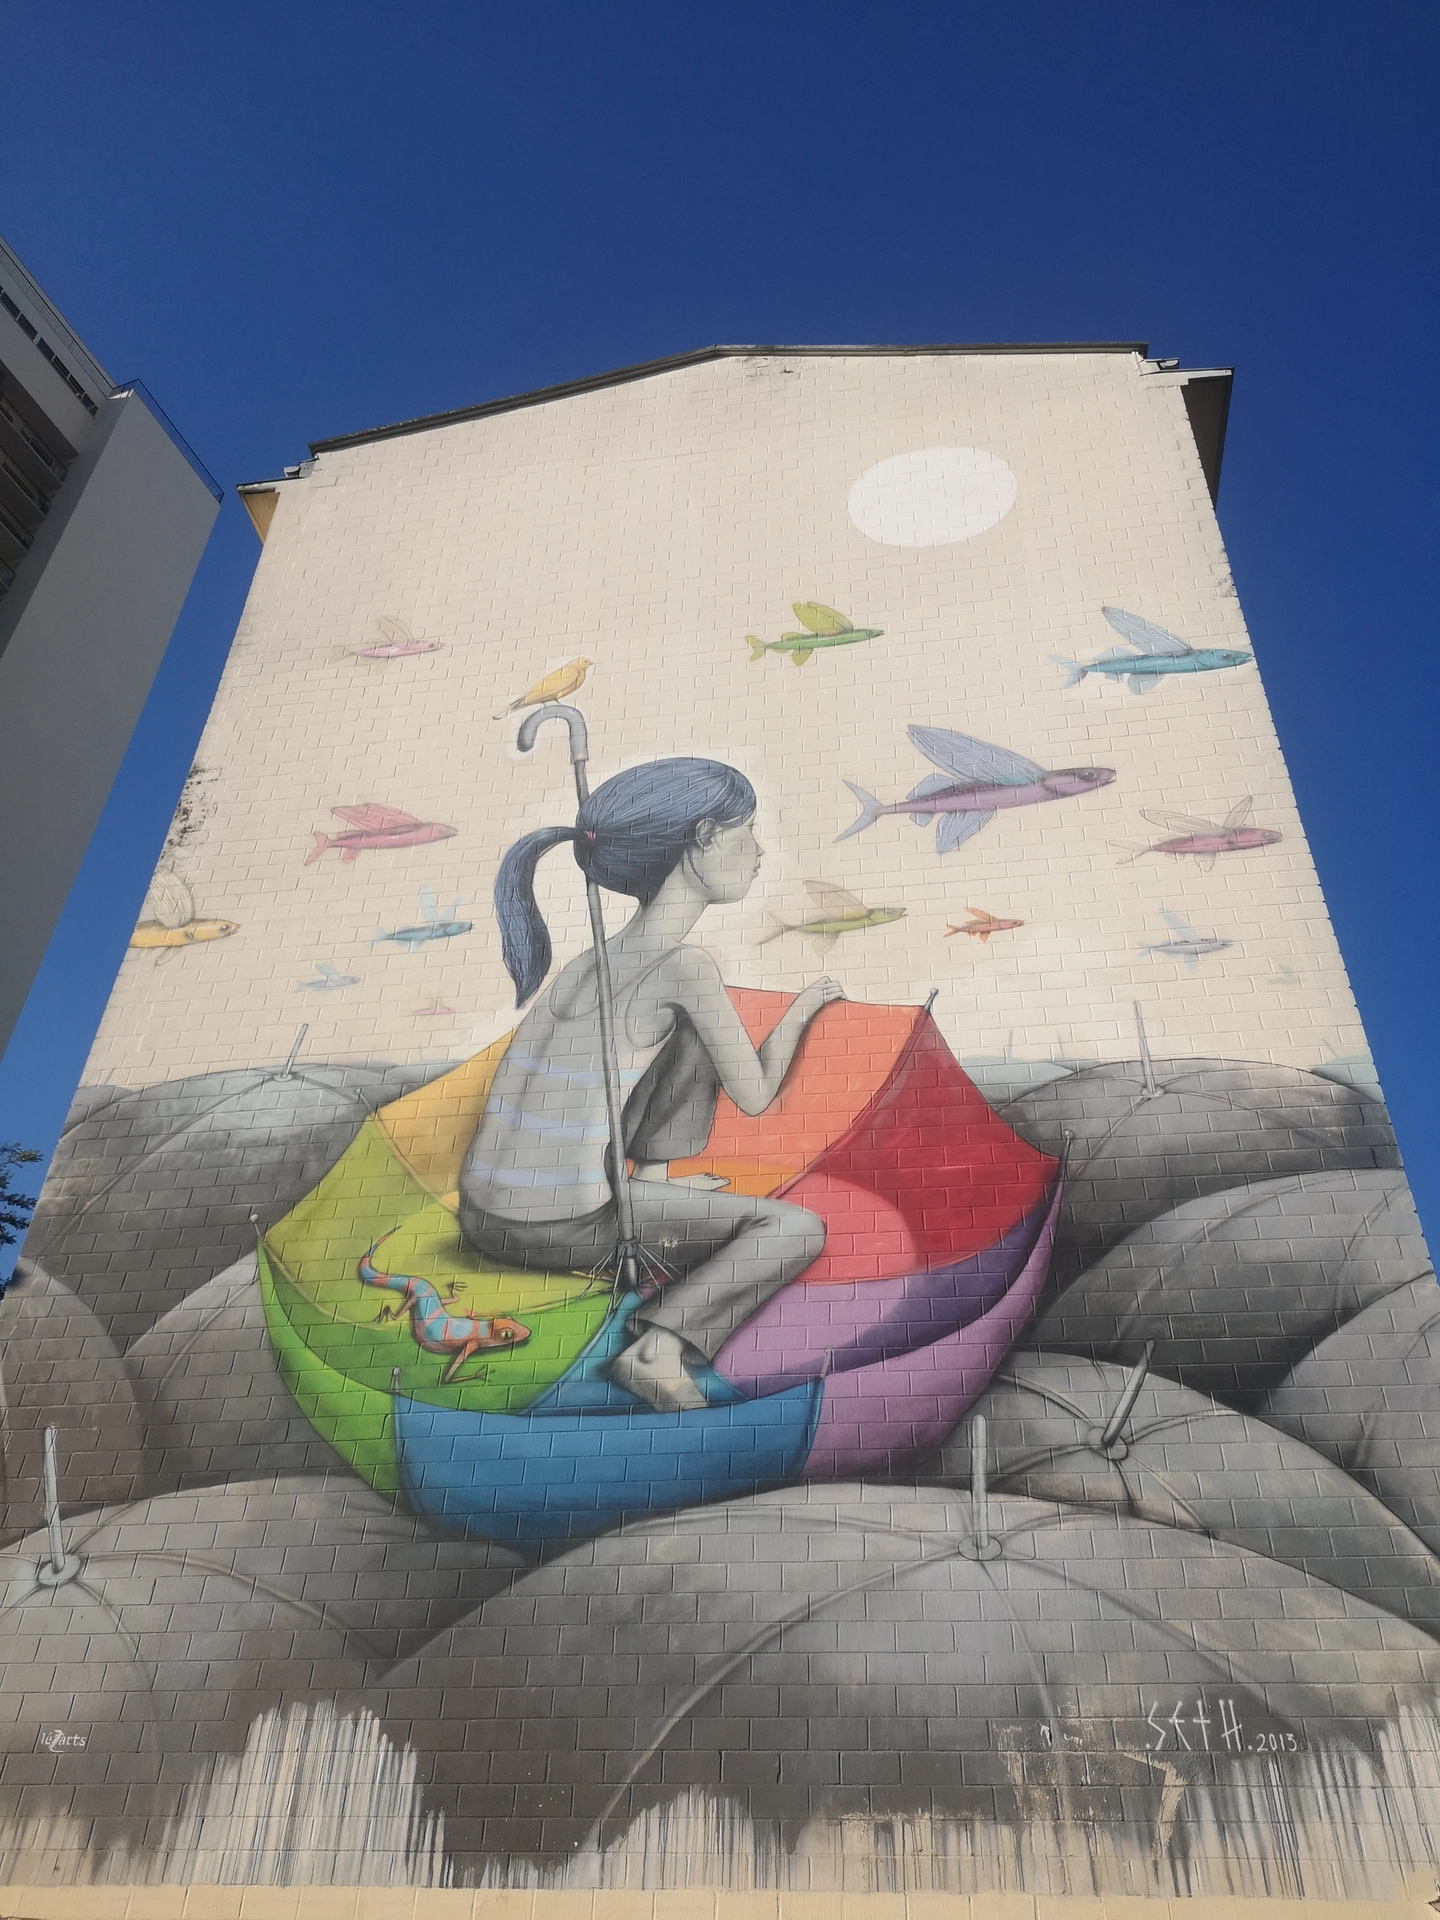 Oeuvre de Street Art réalisée par Seth à Paris